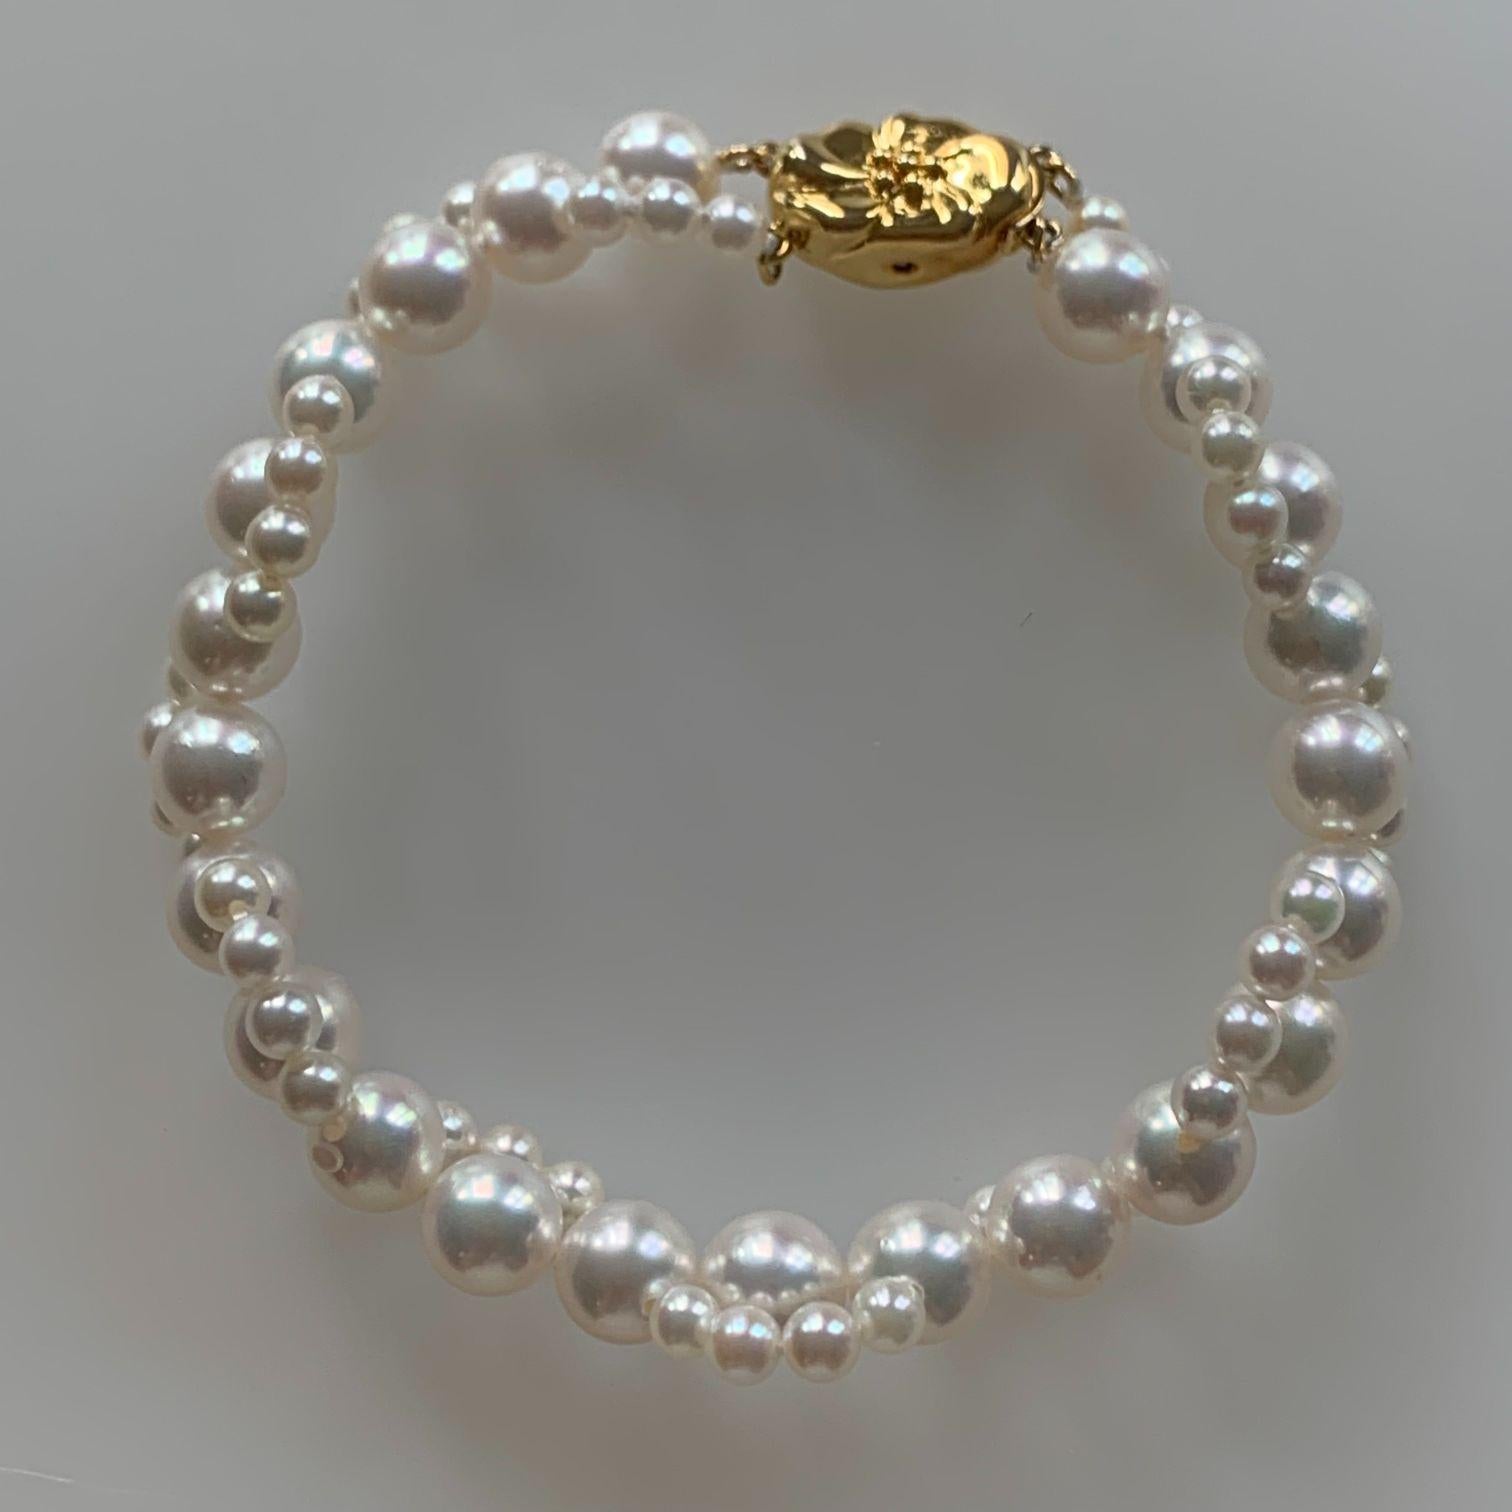 Ce design de brin de perle tissé autonome est stupéfiant, tandis que le fermoir en or unique fait ressortir l'élégance du bracelet de manière synergique. Une combinaison parfaite pour ces occasions spéciales.

Les perles Akoya d'Ise Shima, au Japon,